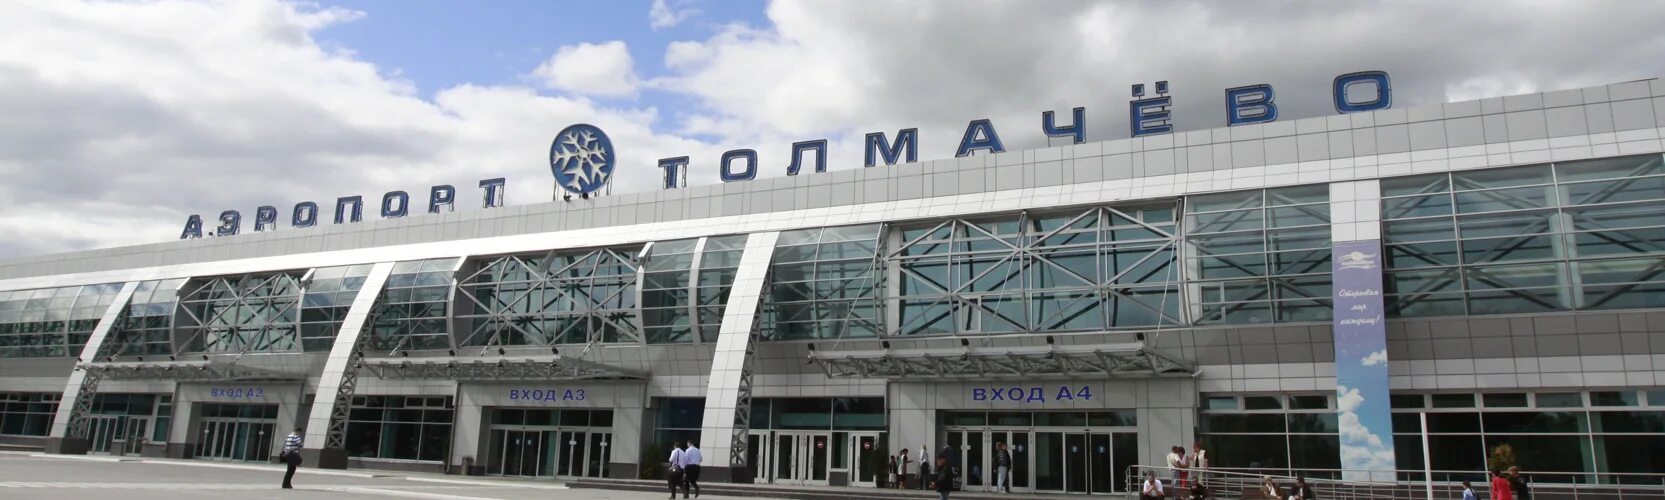 Аэропорт Толмачево Новосибирск. Аэропорт Толмачево 2000 год. Автовокзал Толмачево Новосибирск. Толмачево ЖД вокзал Новосибирск.